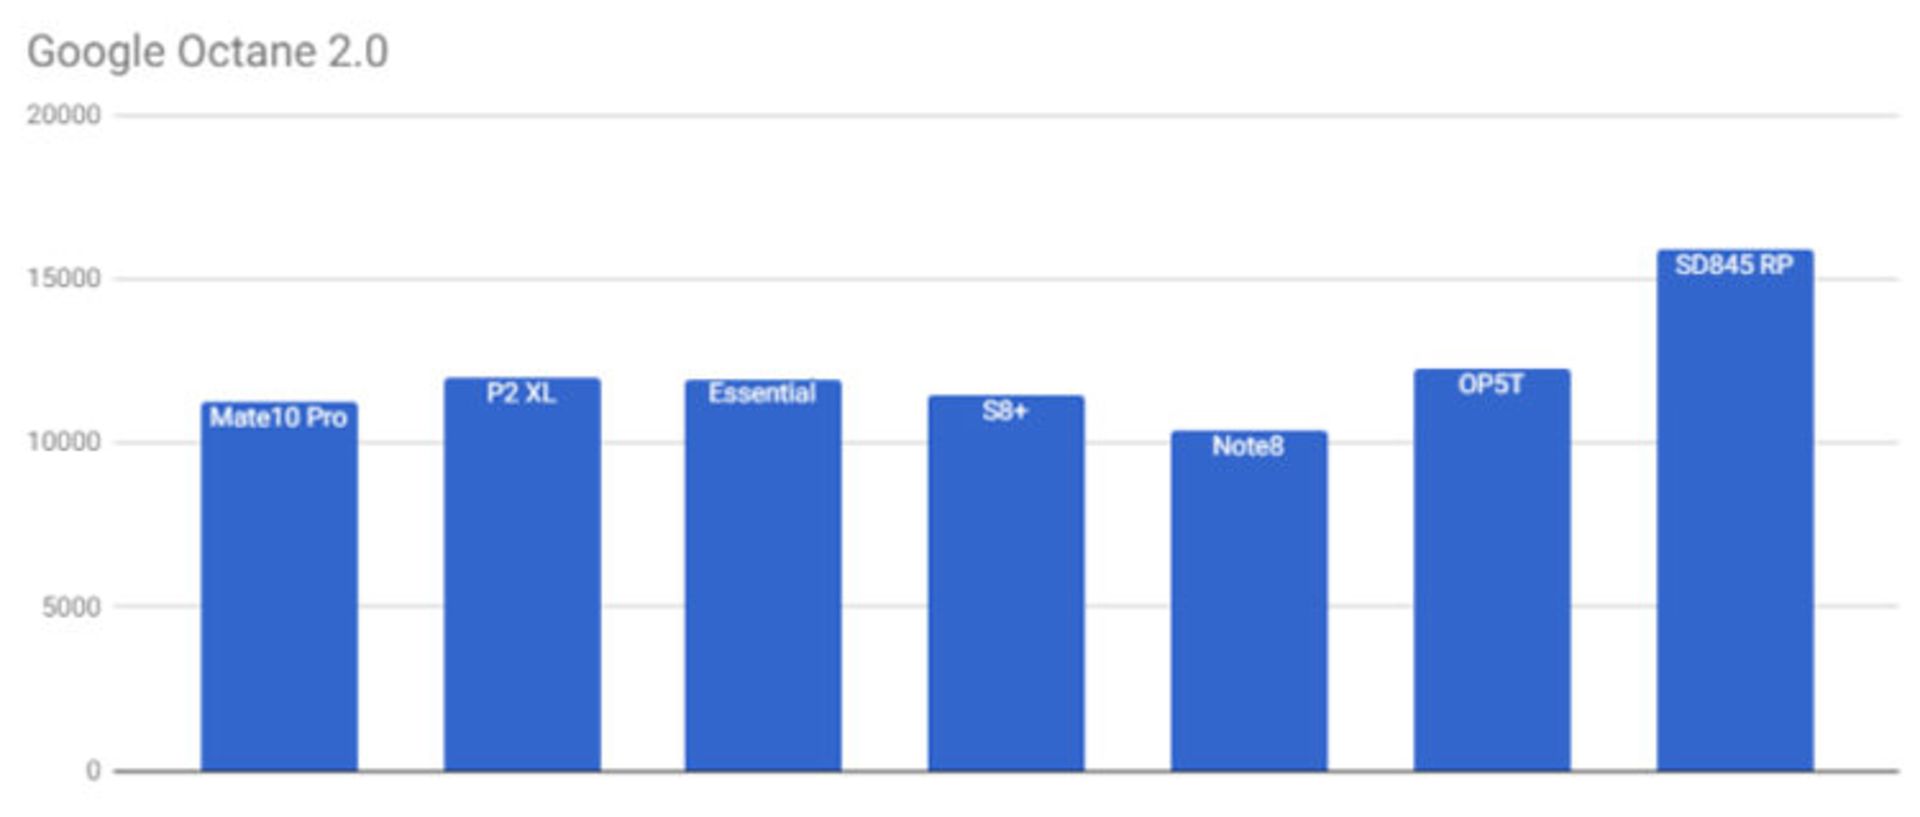 نتایج بنچمارک اسنپدراگون ۸۴۵ / Snapdragon 845 Benchmark Results